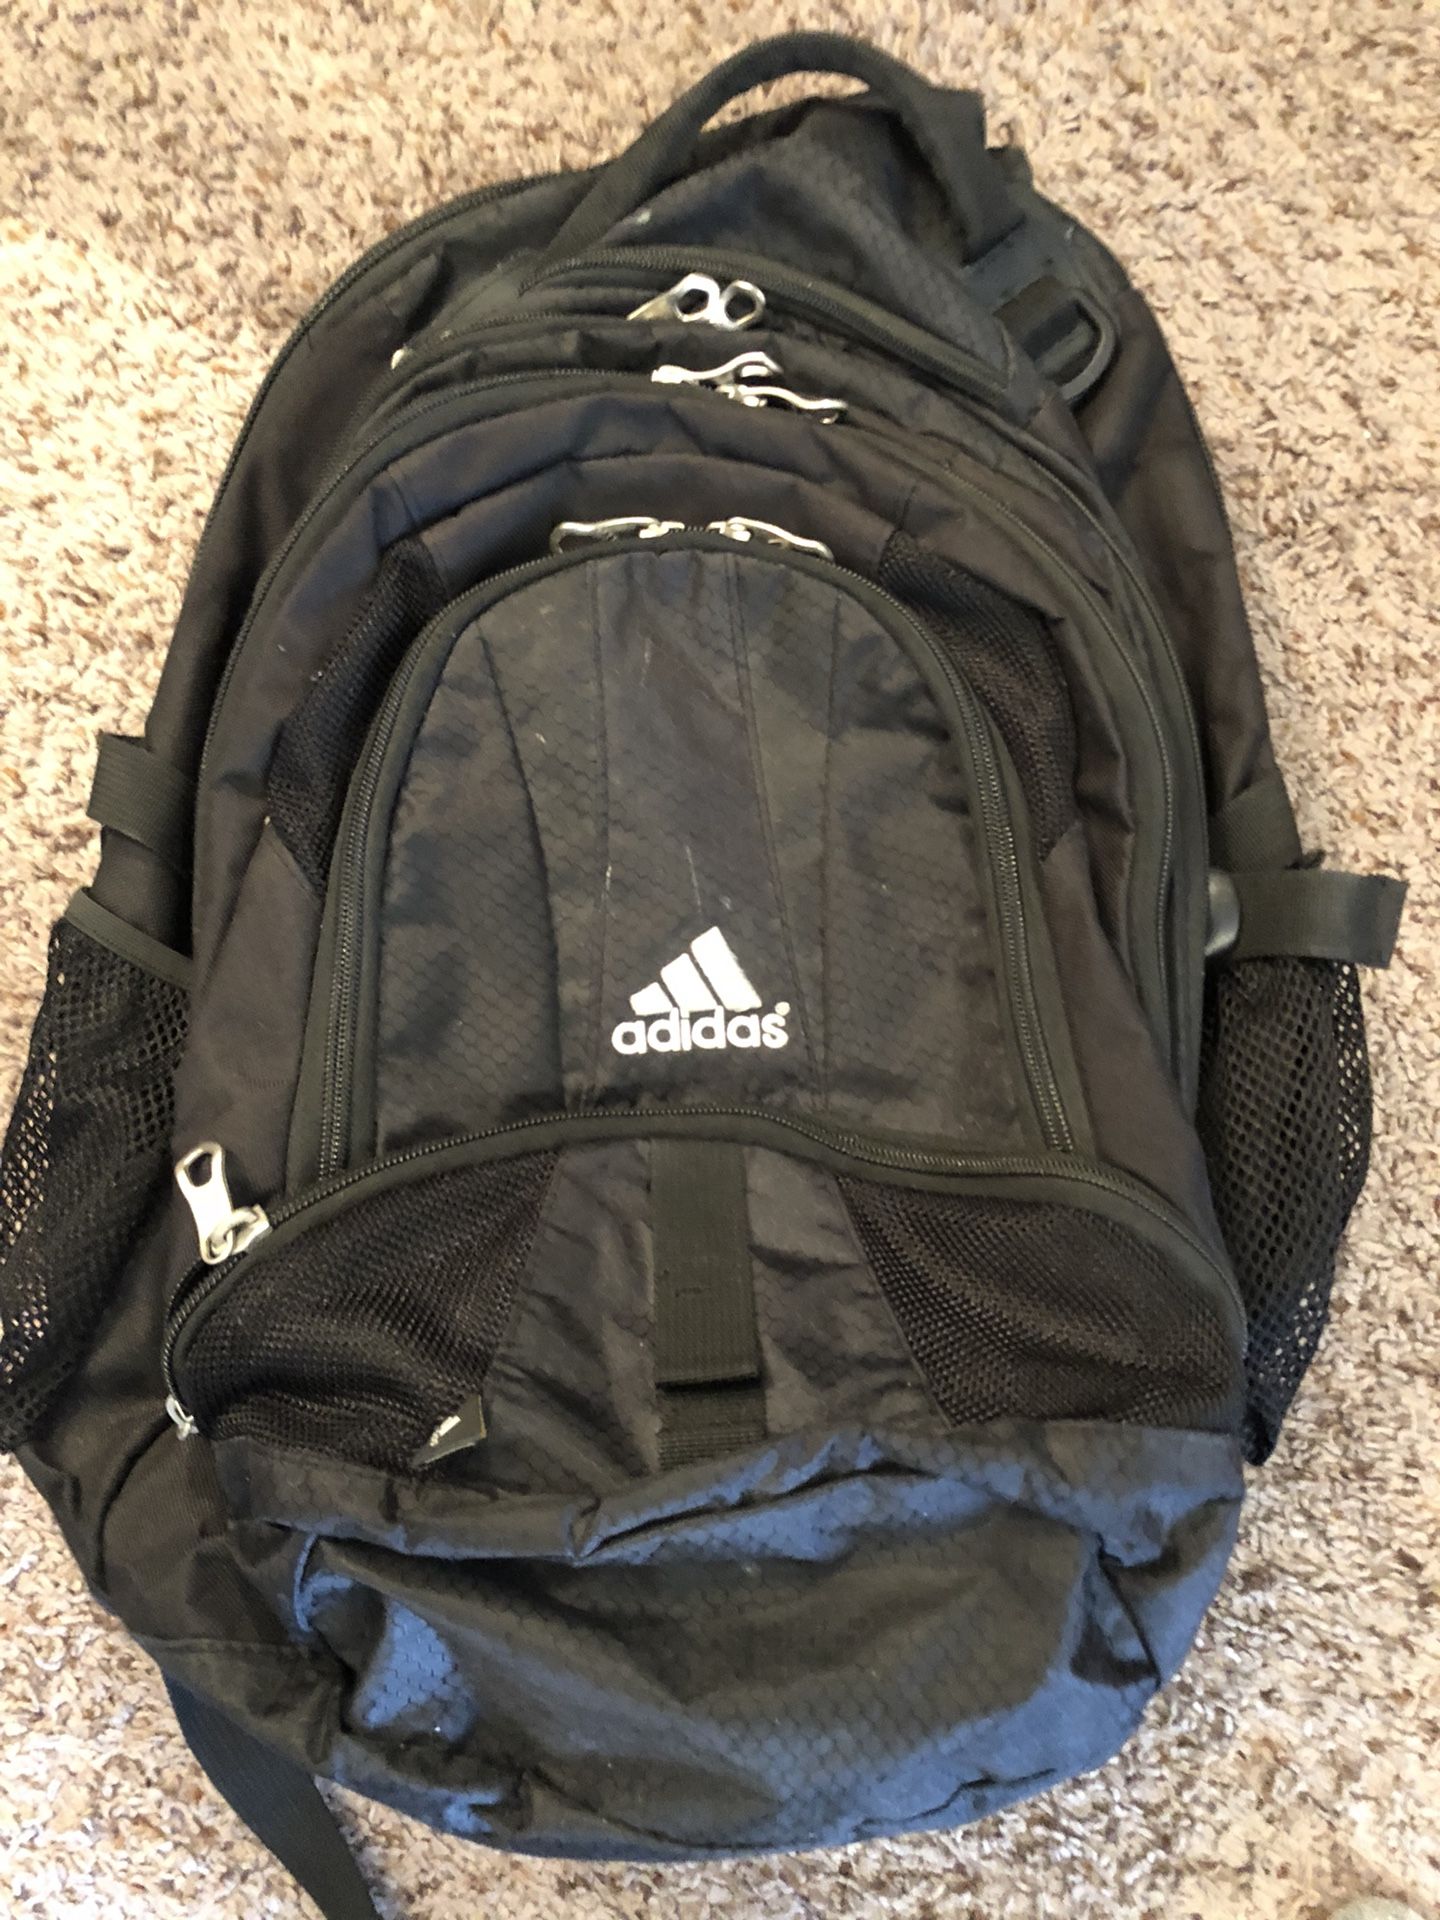 Big adidas backpack